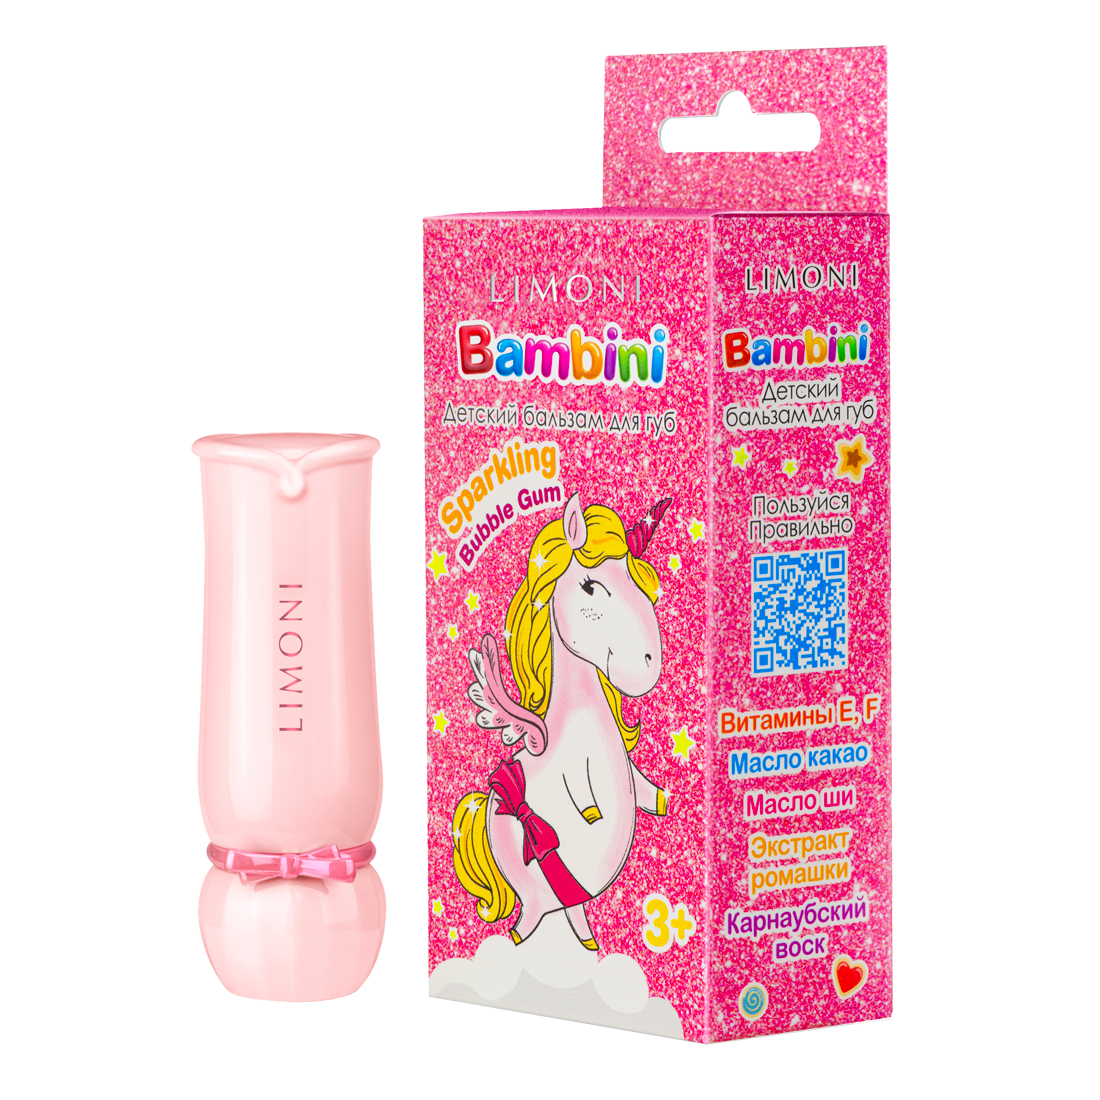 Детский бальзам для губ, 01 тон, Bambini Sparklinq Bubble Gum, 3+, Limoni